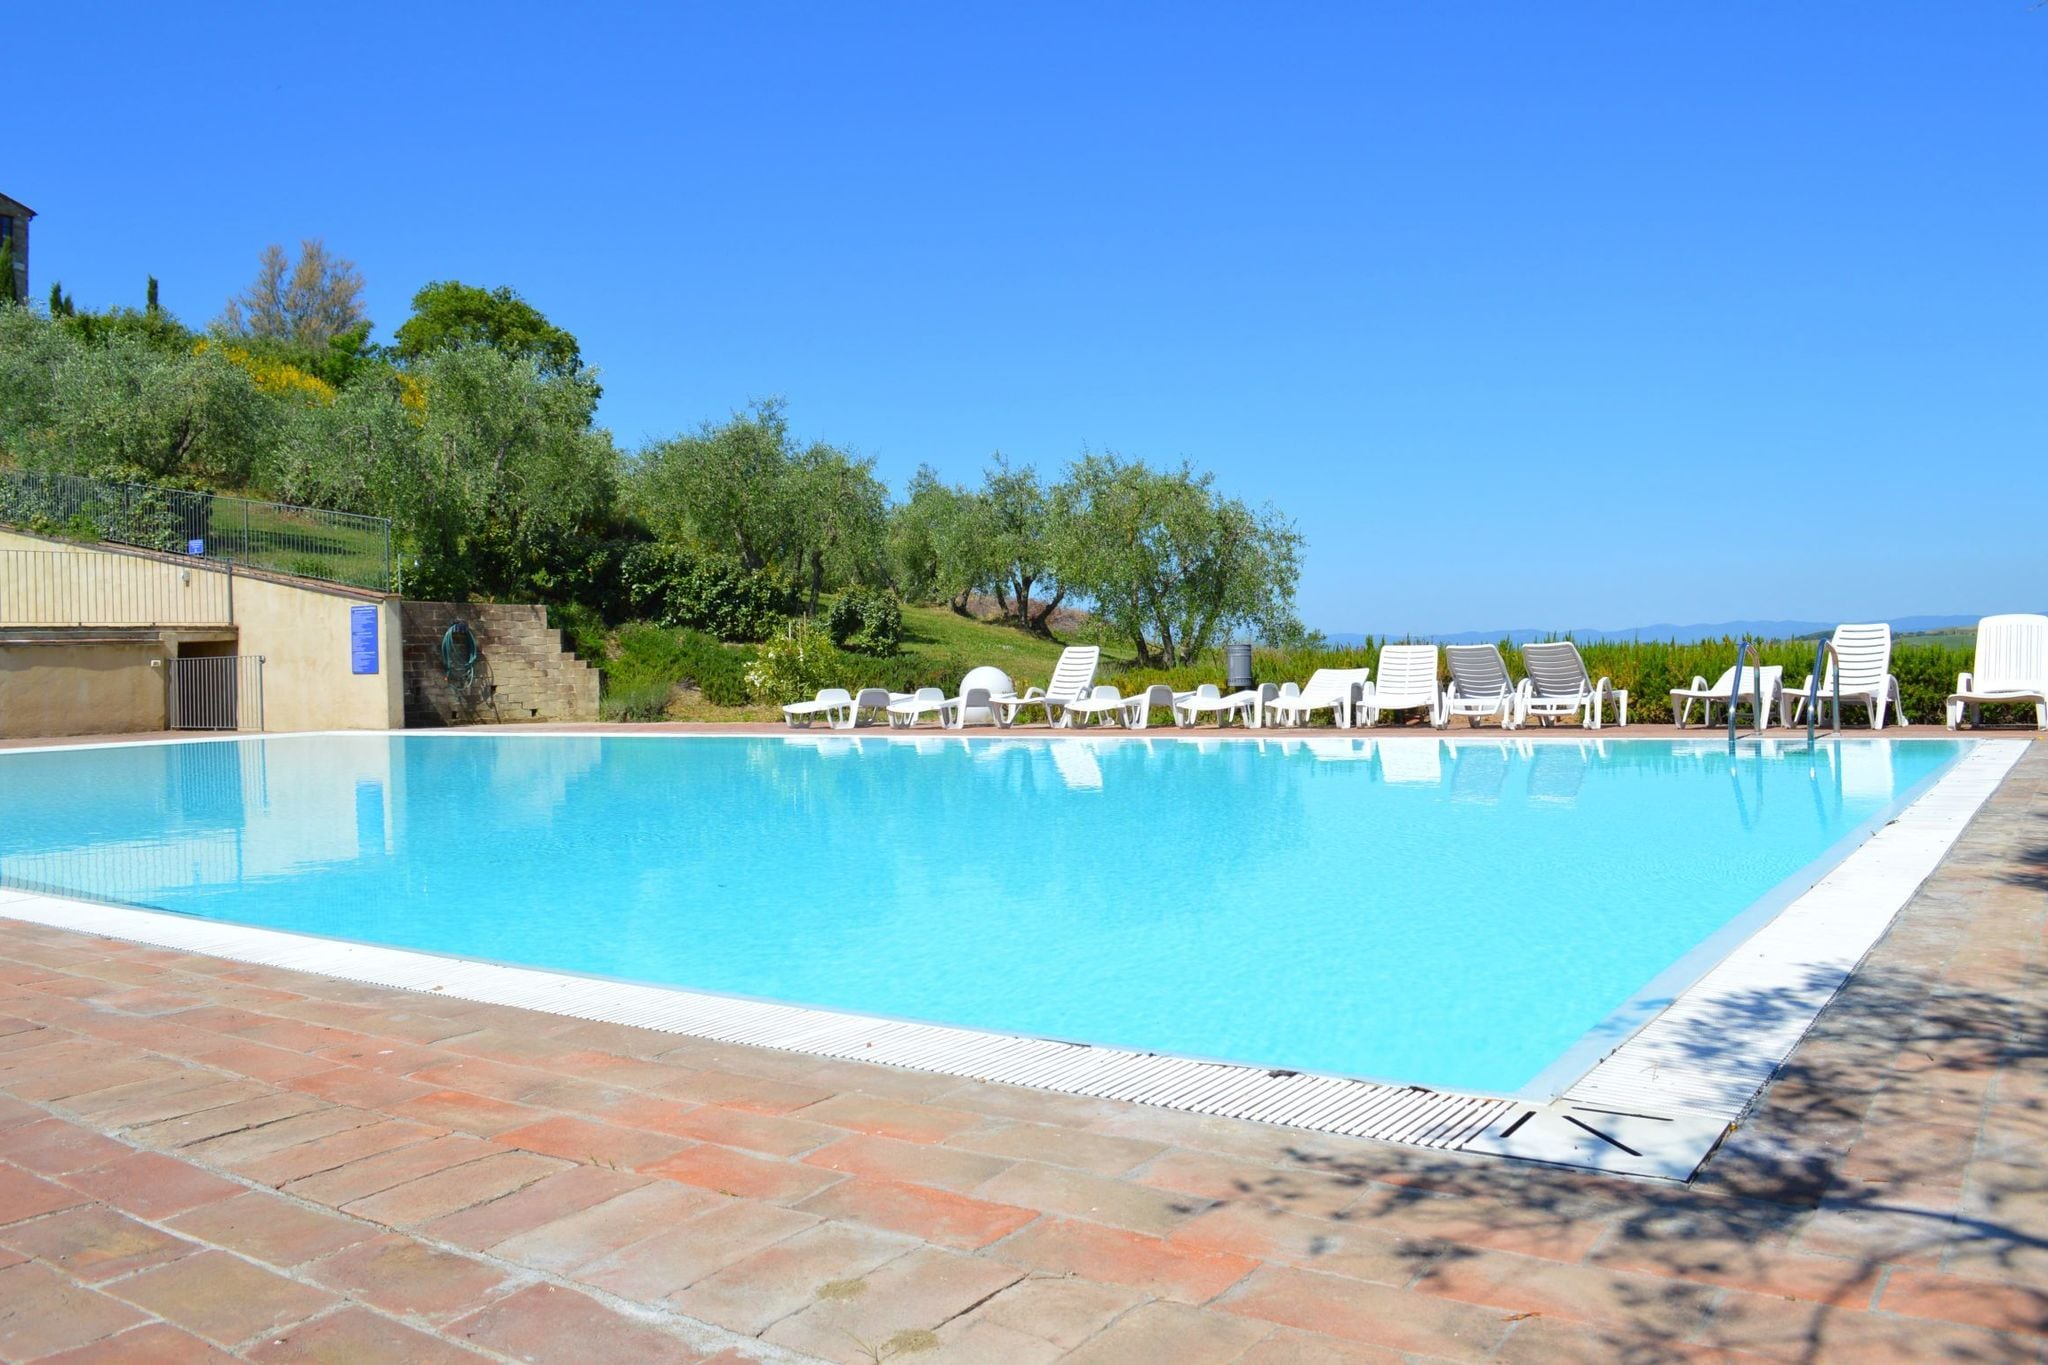 Ferienwohnung mit 2 Pools in den Hügeln von Siena